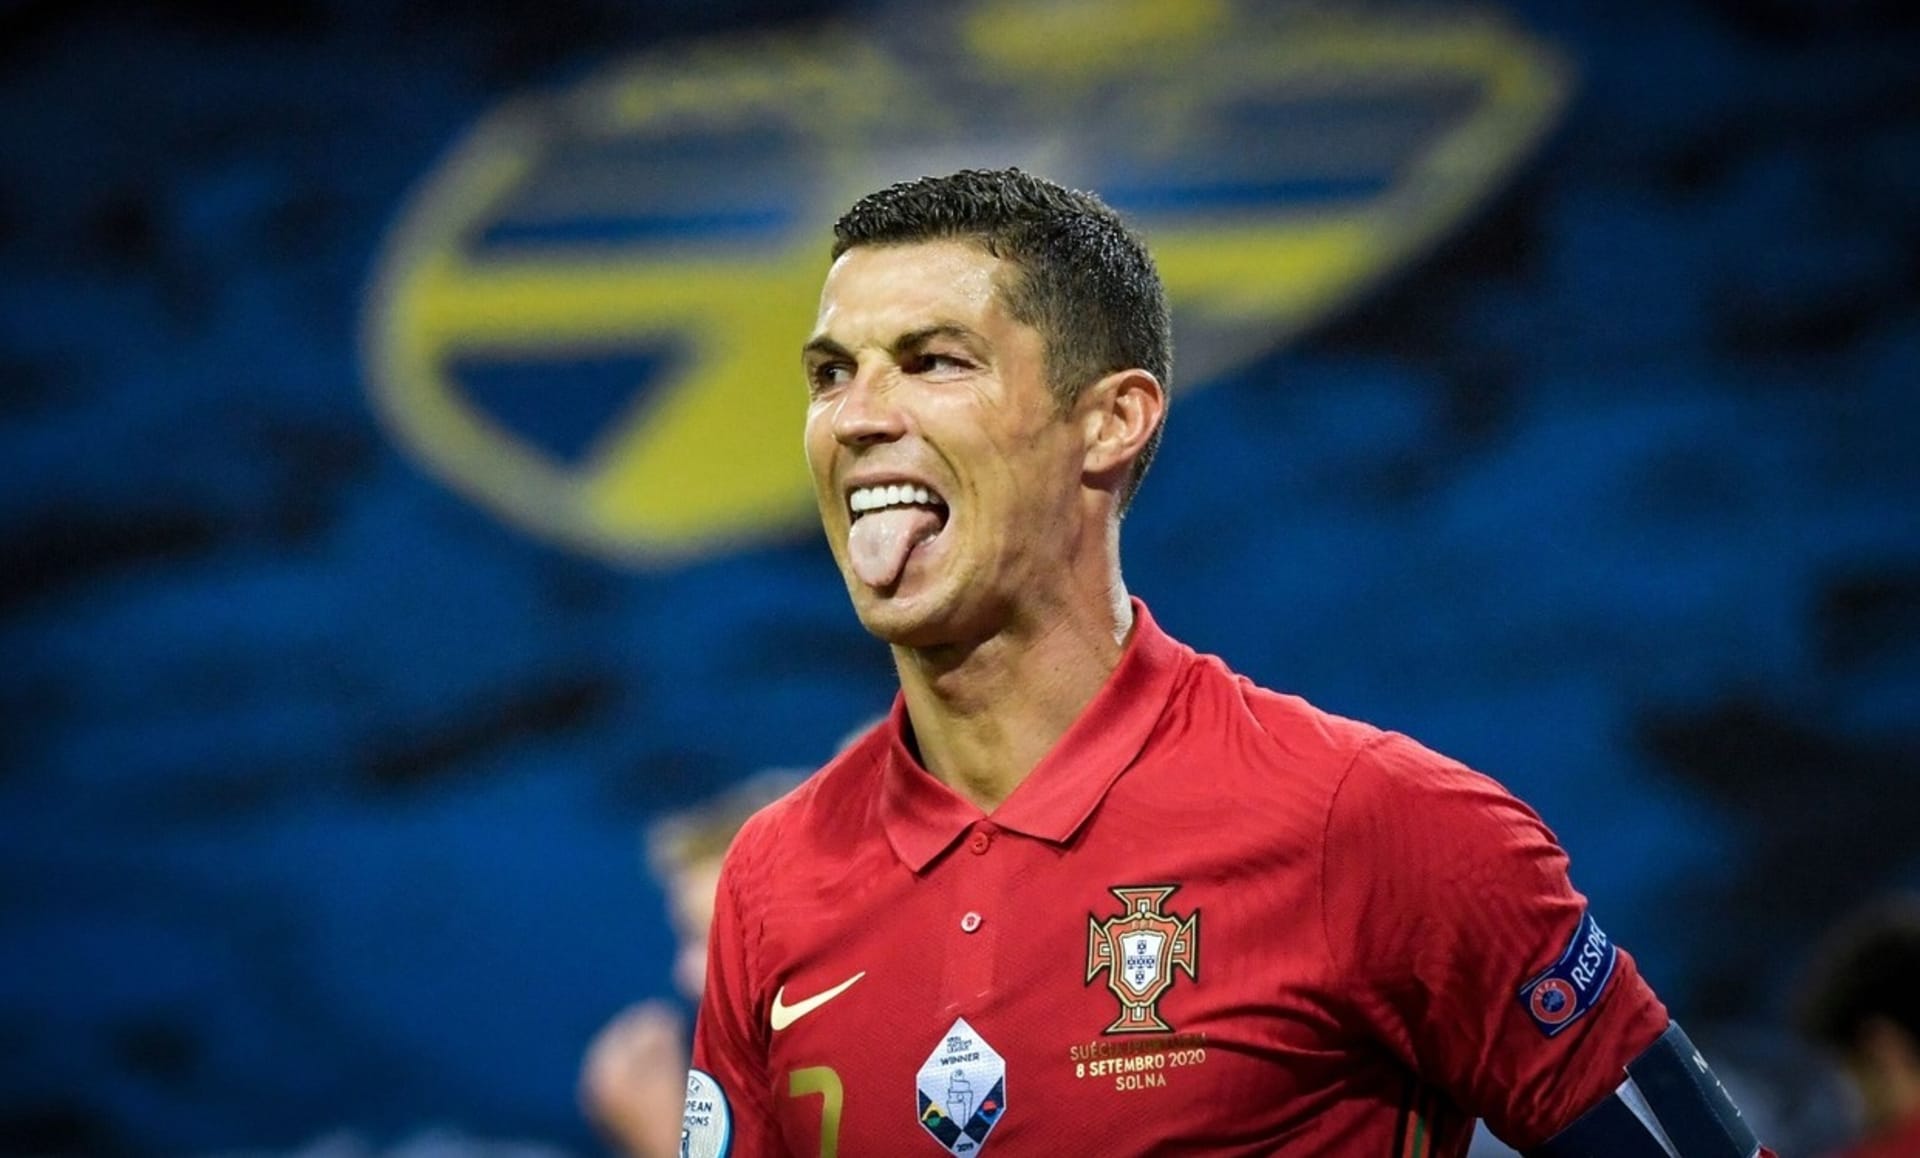 Cristiano Ronaldo nedávno překonal další metu, když dal 100. gól za portugalskou reprezentaci.